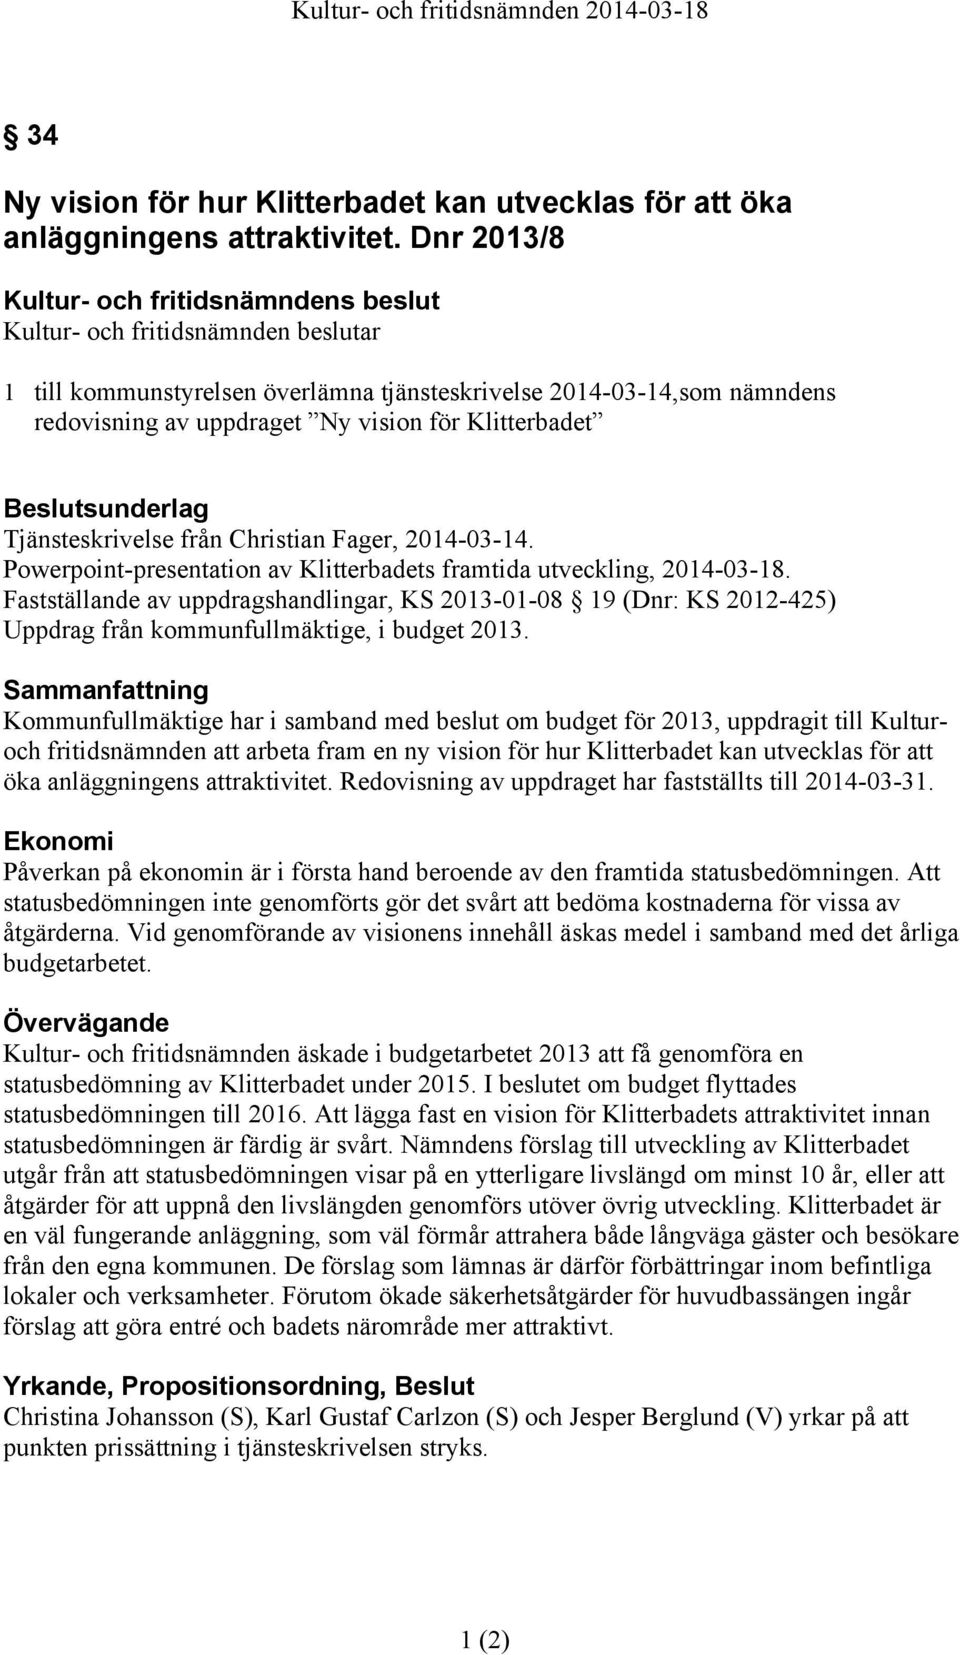 Powerpoint-presentation av Klitterbadets framtida utveckling, 2014-03-18. Fastställande av uppdragshandlingar, KS 2013-01-08 19 (Dnr: KS 2012-425) Uppdrag från kommunfullmäktige, i budget 2013.